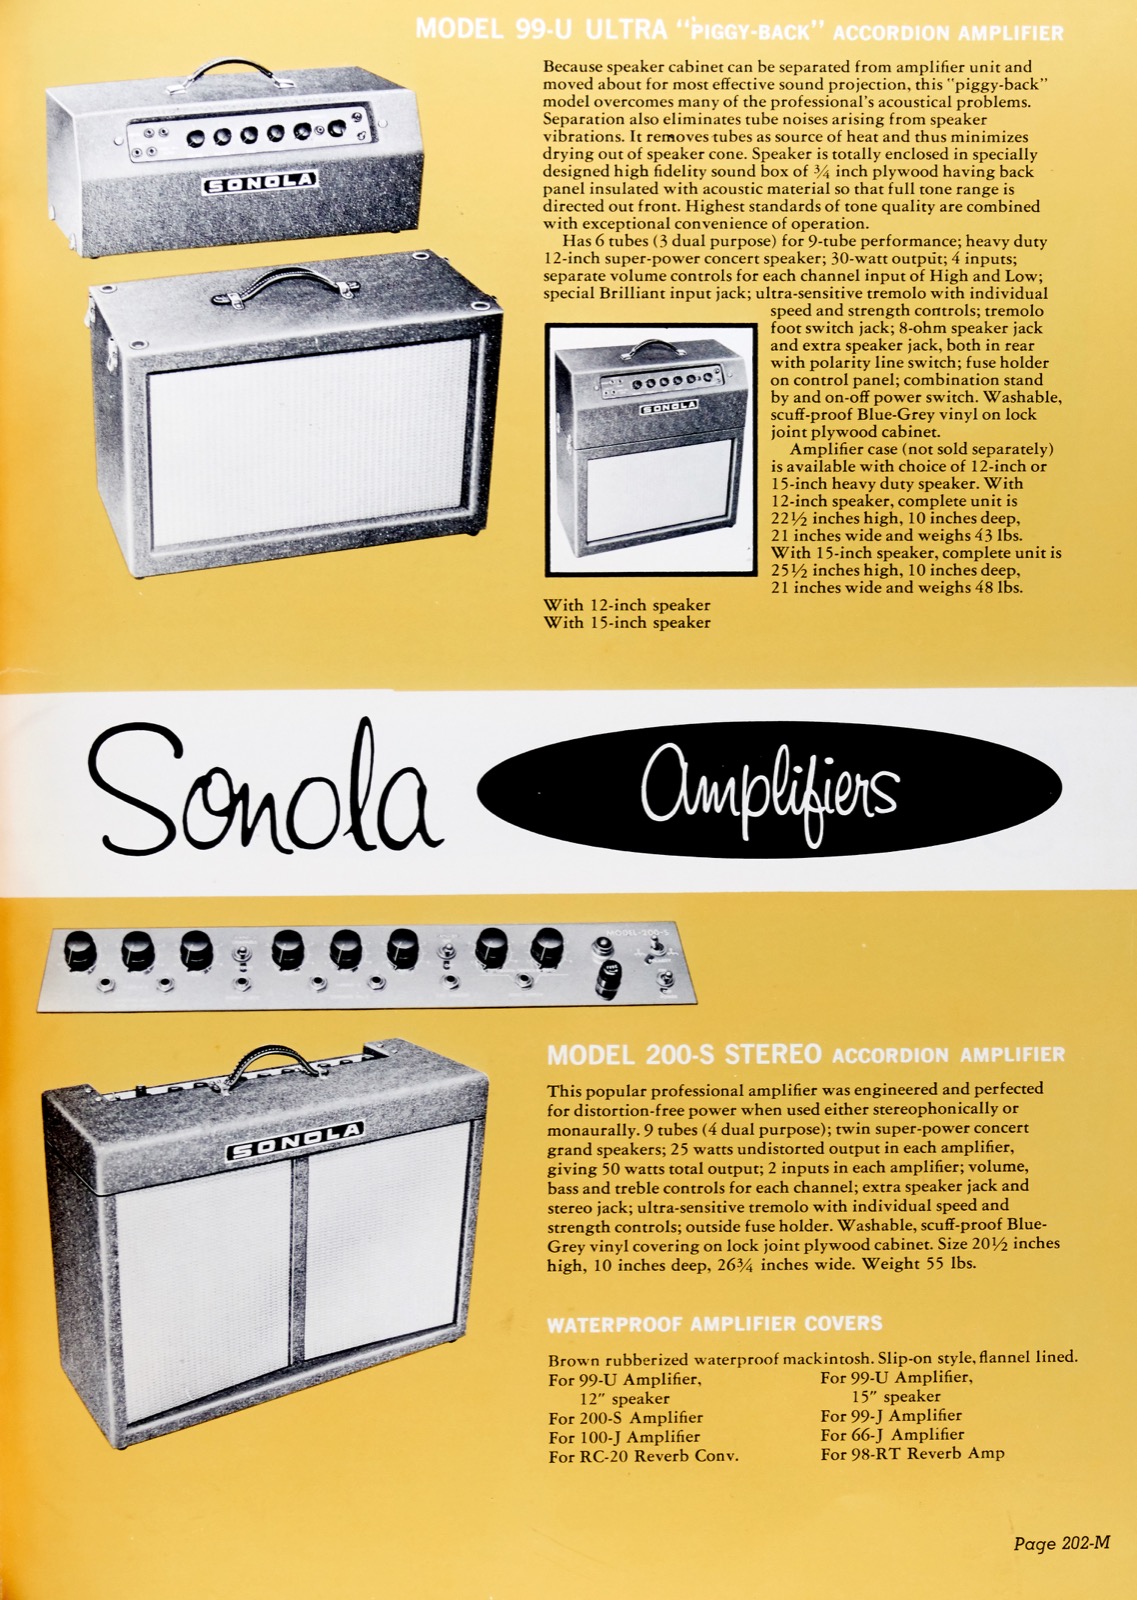 Guild-1965-Sonoma-Amps-TD-pg202M_1600.jpg